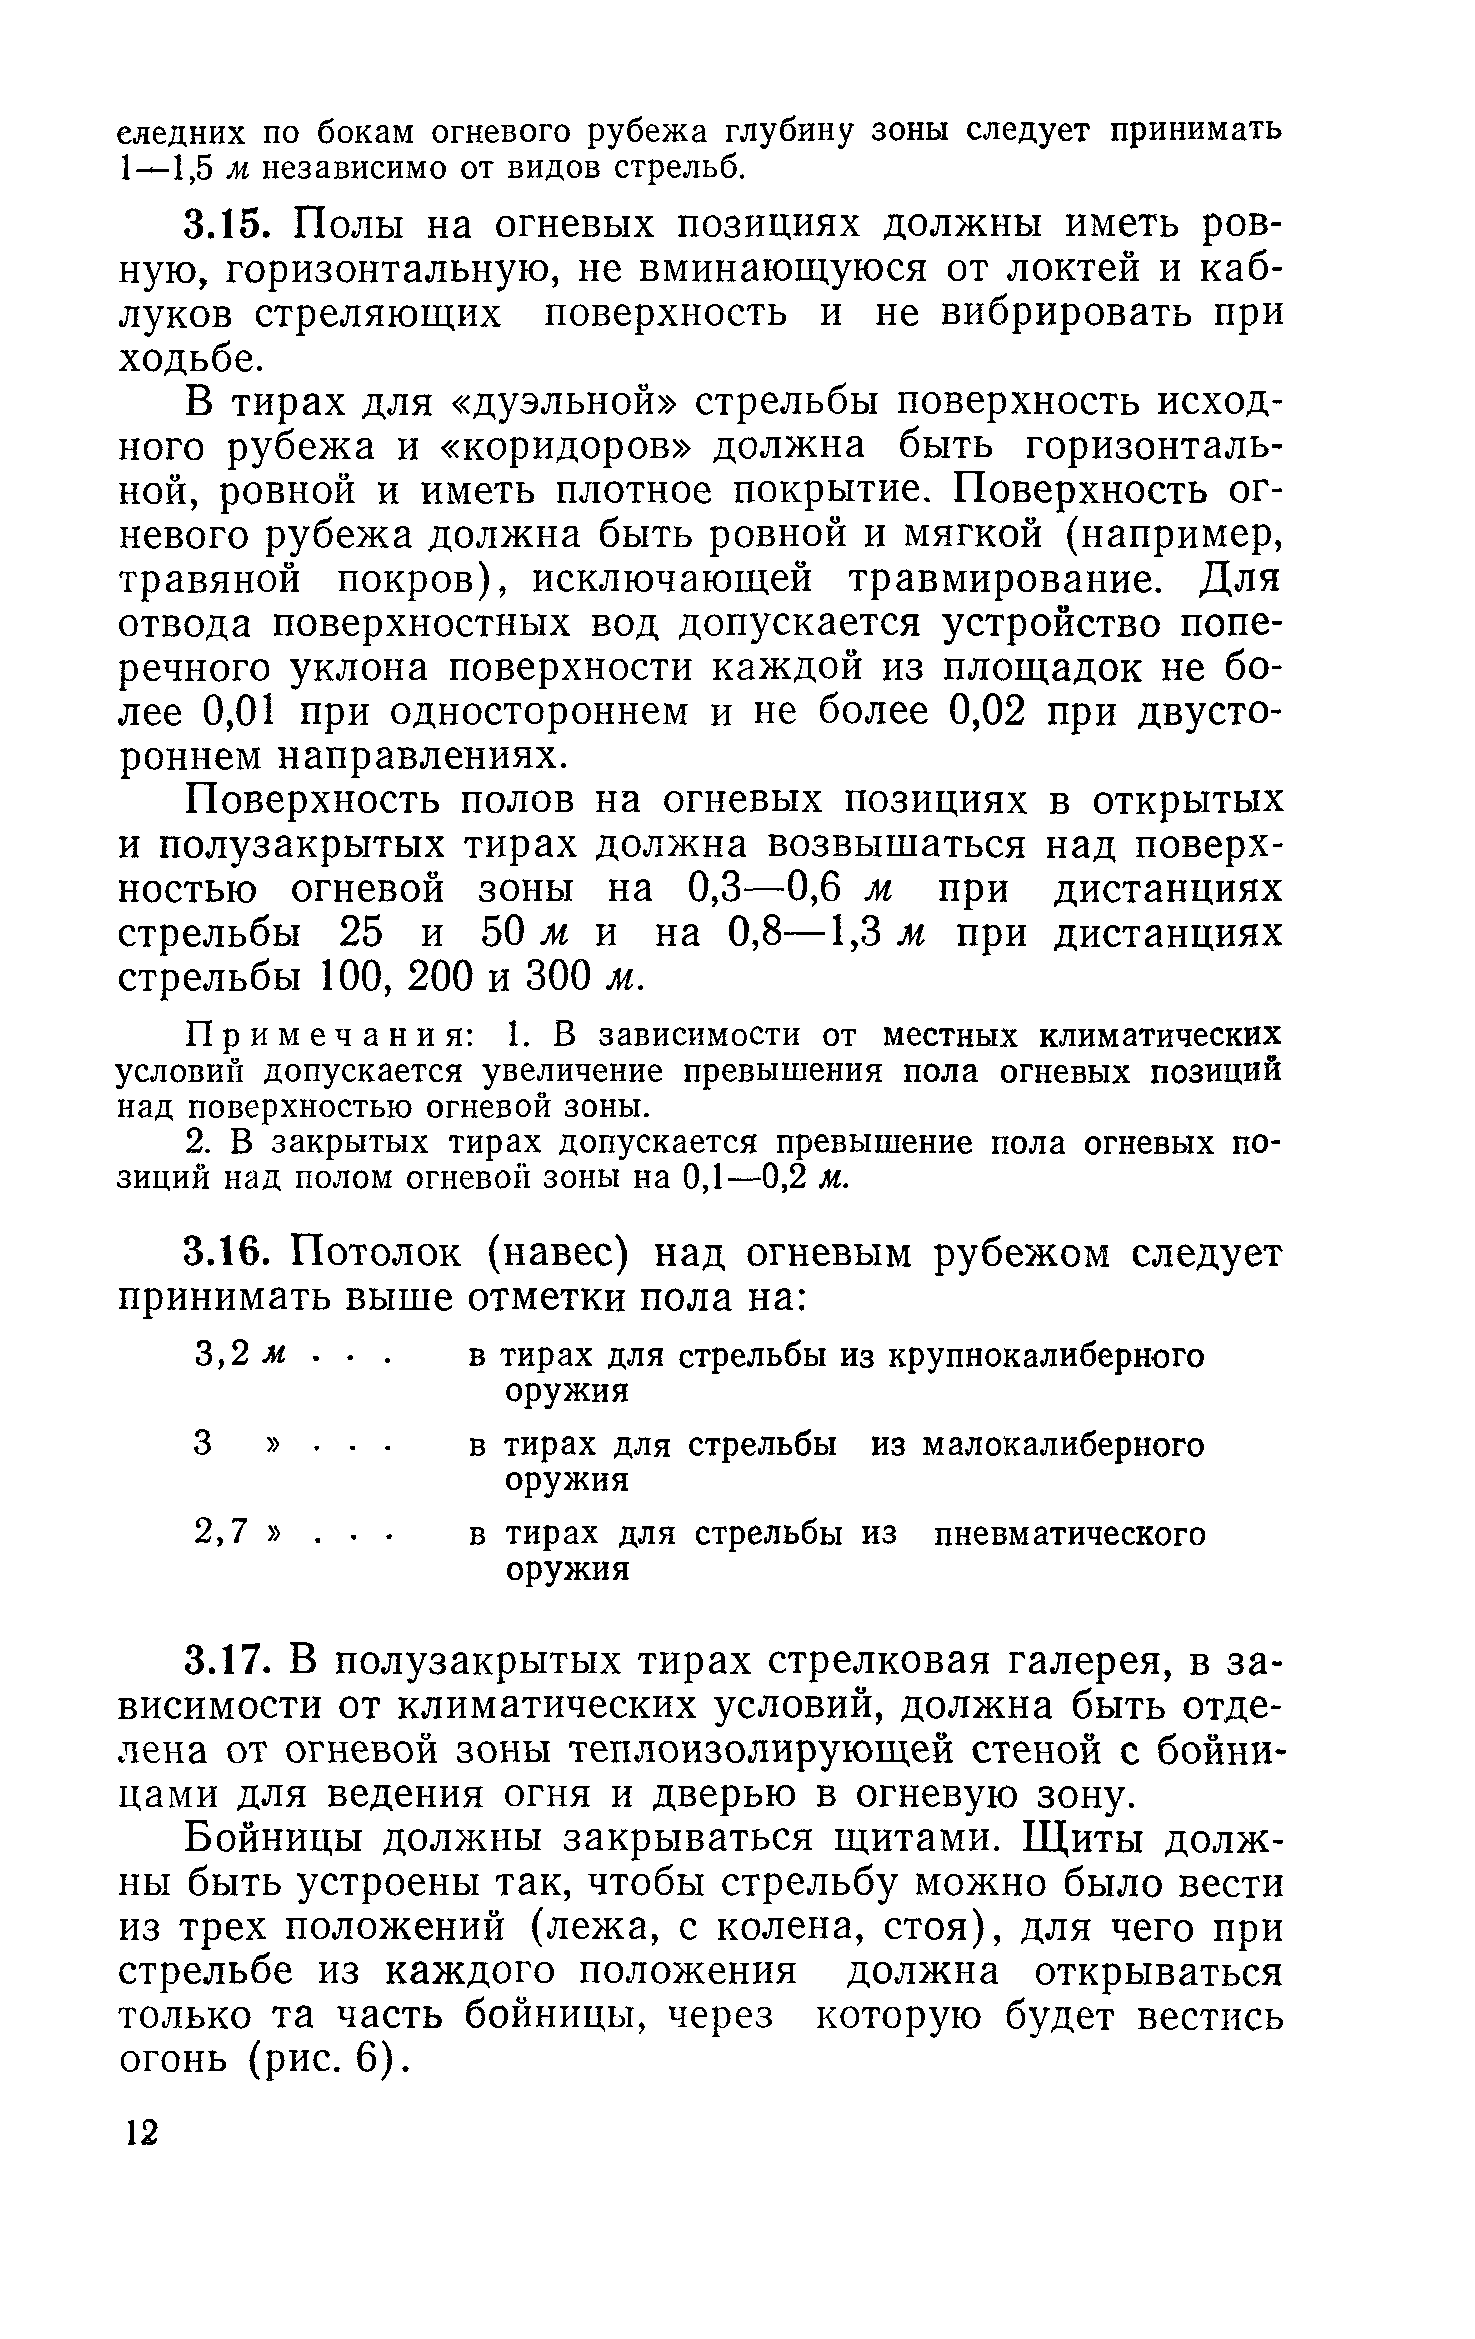 ВСН 6-71/Госгражданстрой